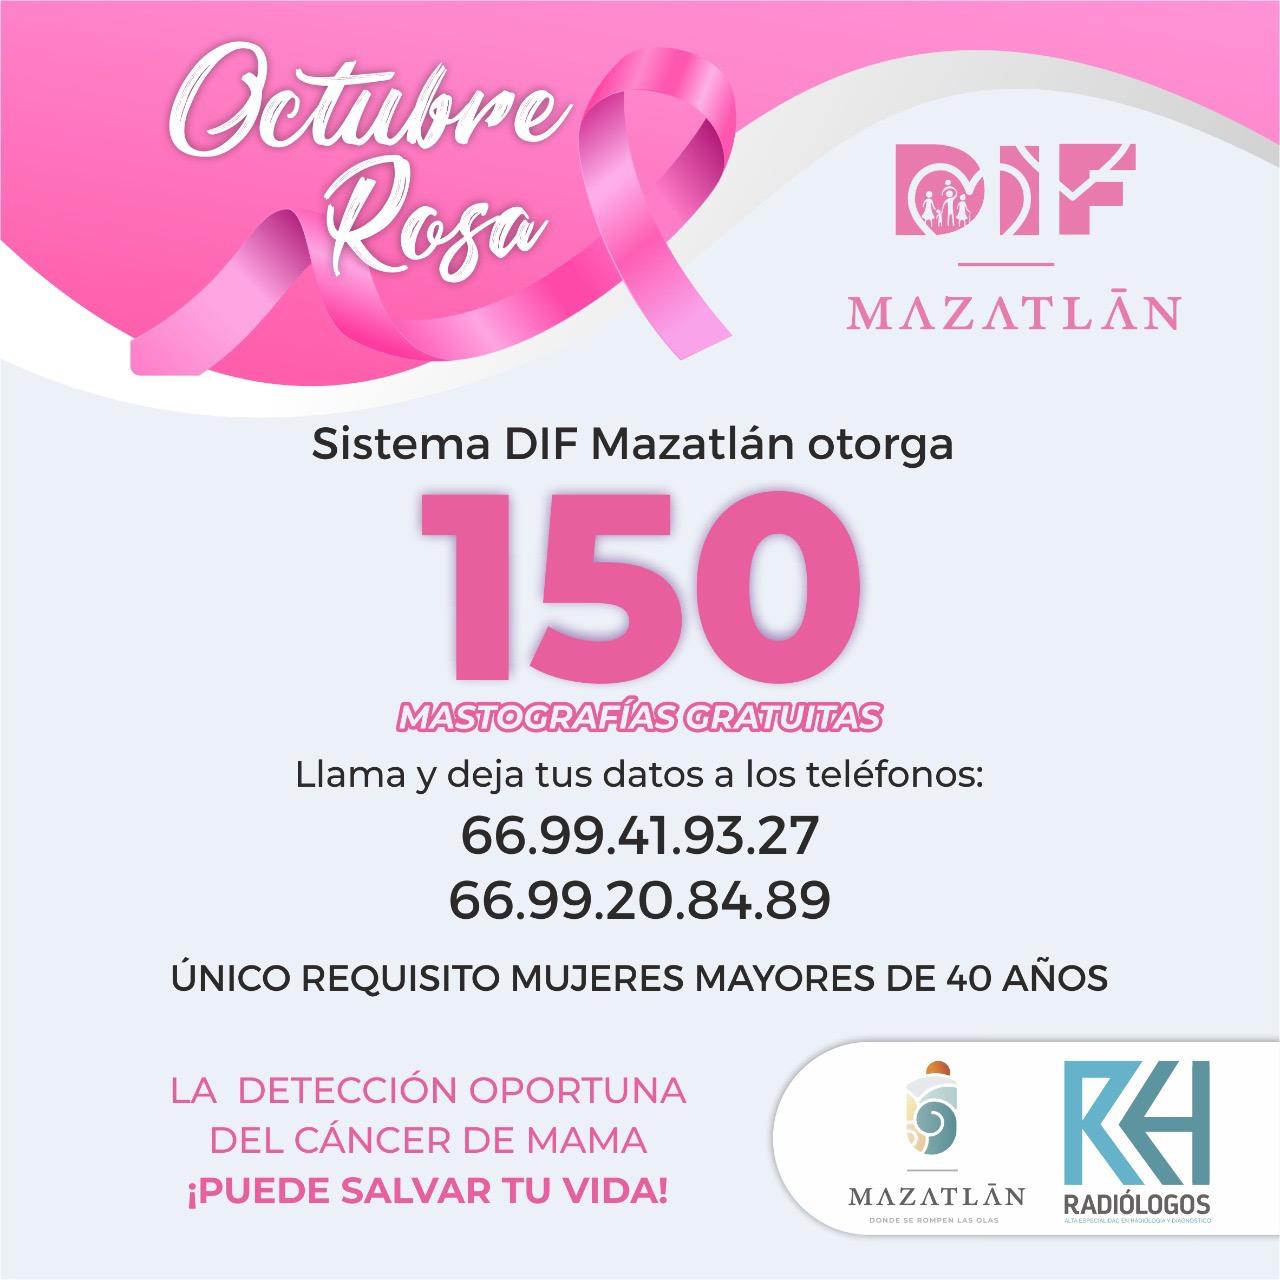 $!Otorgará DIF Mazatlán 150 mastografías sin costo para la detección temprana del cáncer de mama